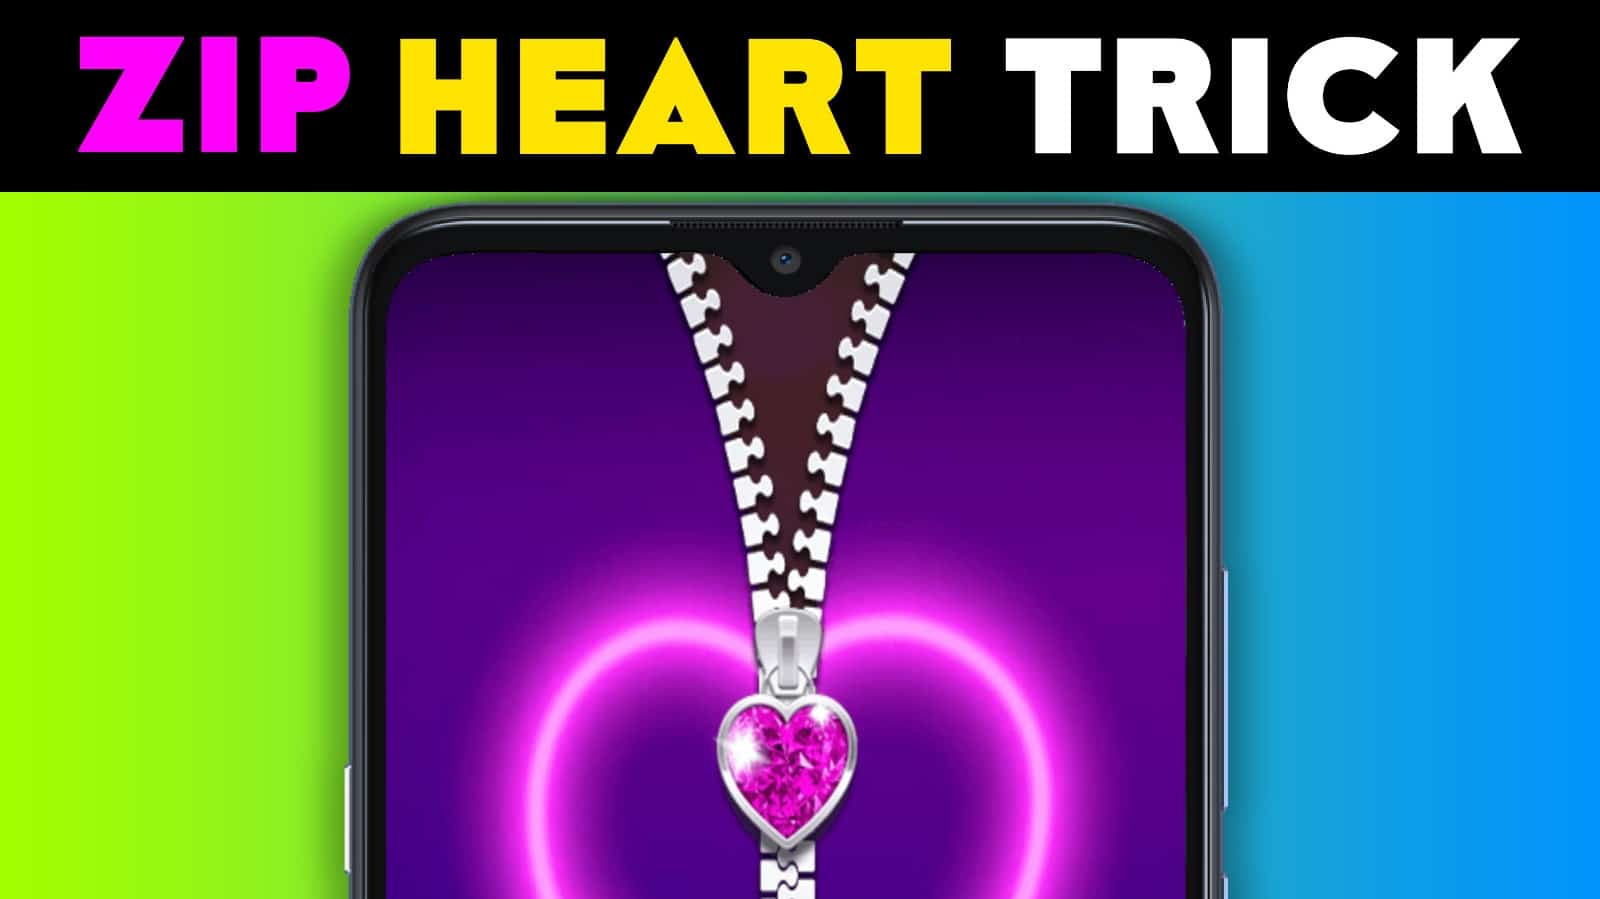 Heart Zip Screen Lock